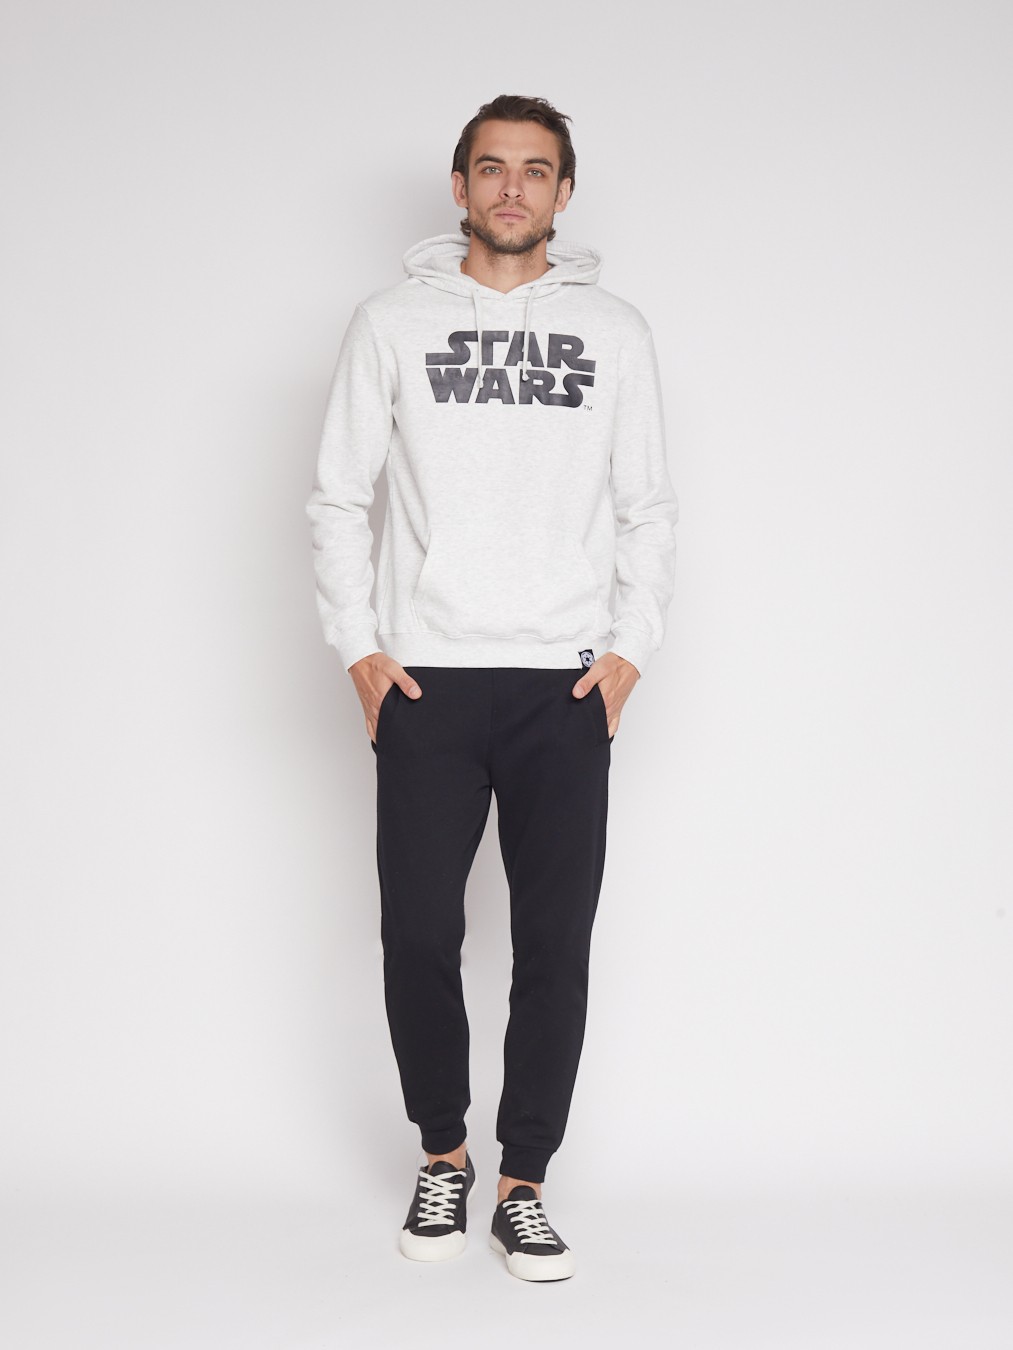 Худи с принтом Звёздные войны (Star Wars) zolla 512334179081, цвет светло-серый, размер S - фото 2